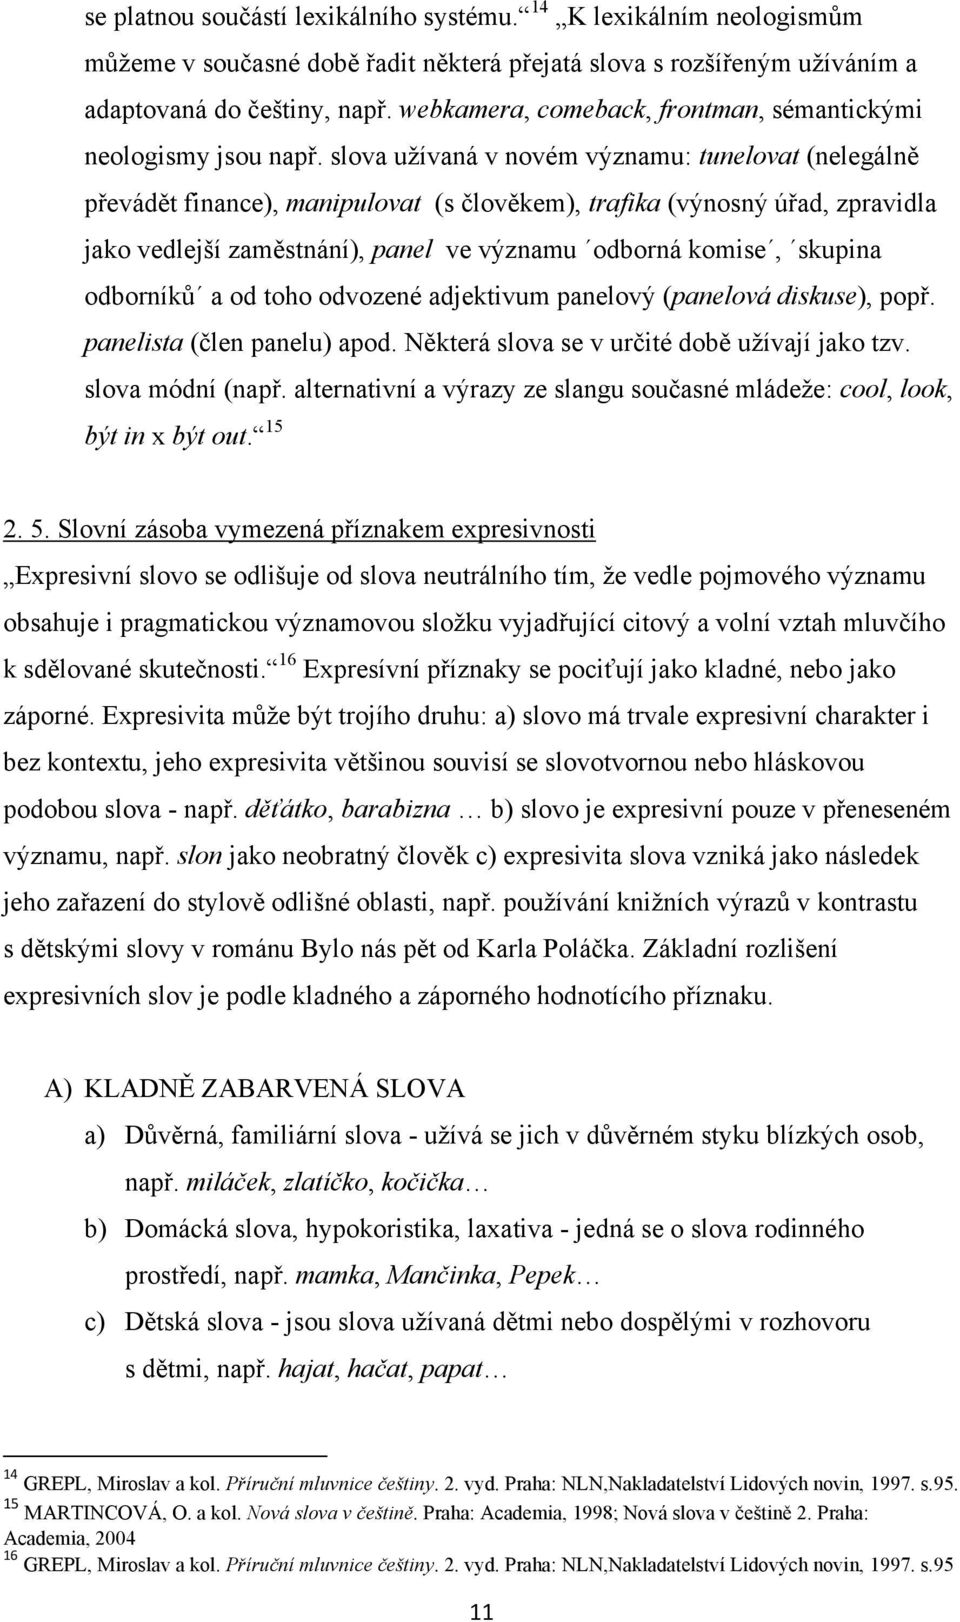 MASARYKOVA UNIVERZITA. Jazykové prostředky v triptychu Ivony Březinové Holky  na vodítku - PDF Stažení zdarma